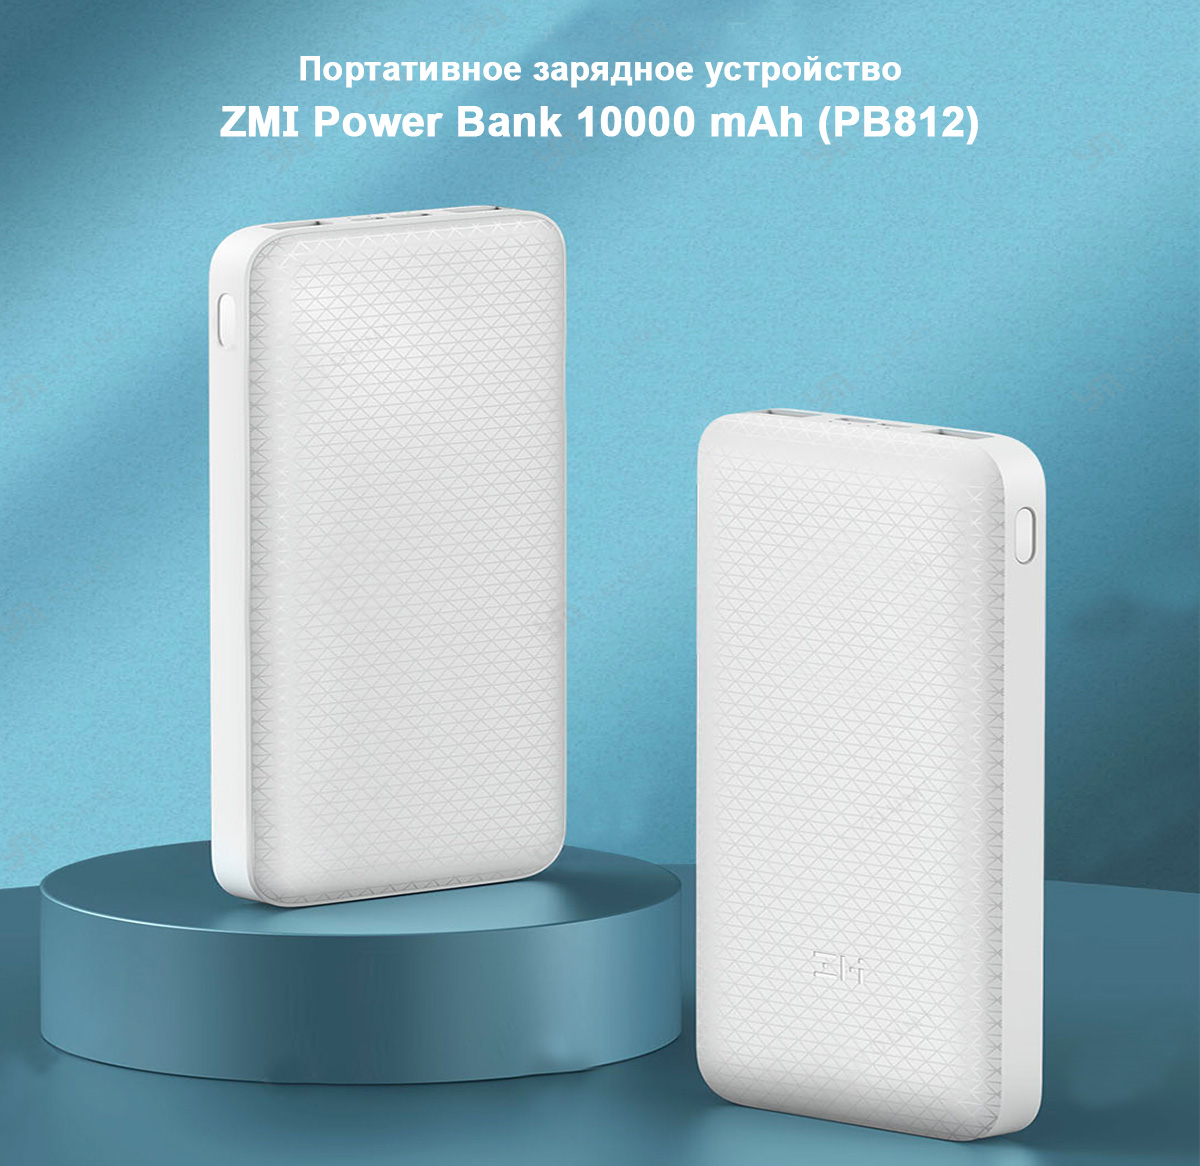 Портативное зарядное устройство ZMI Power Bank 10000 mAh (PB812)